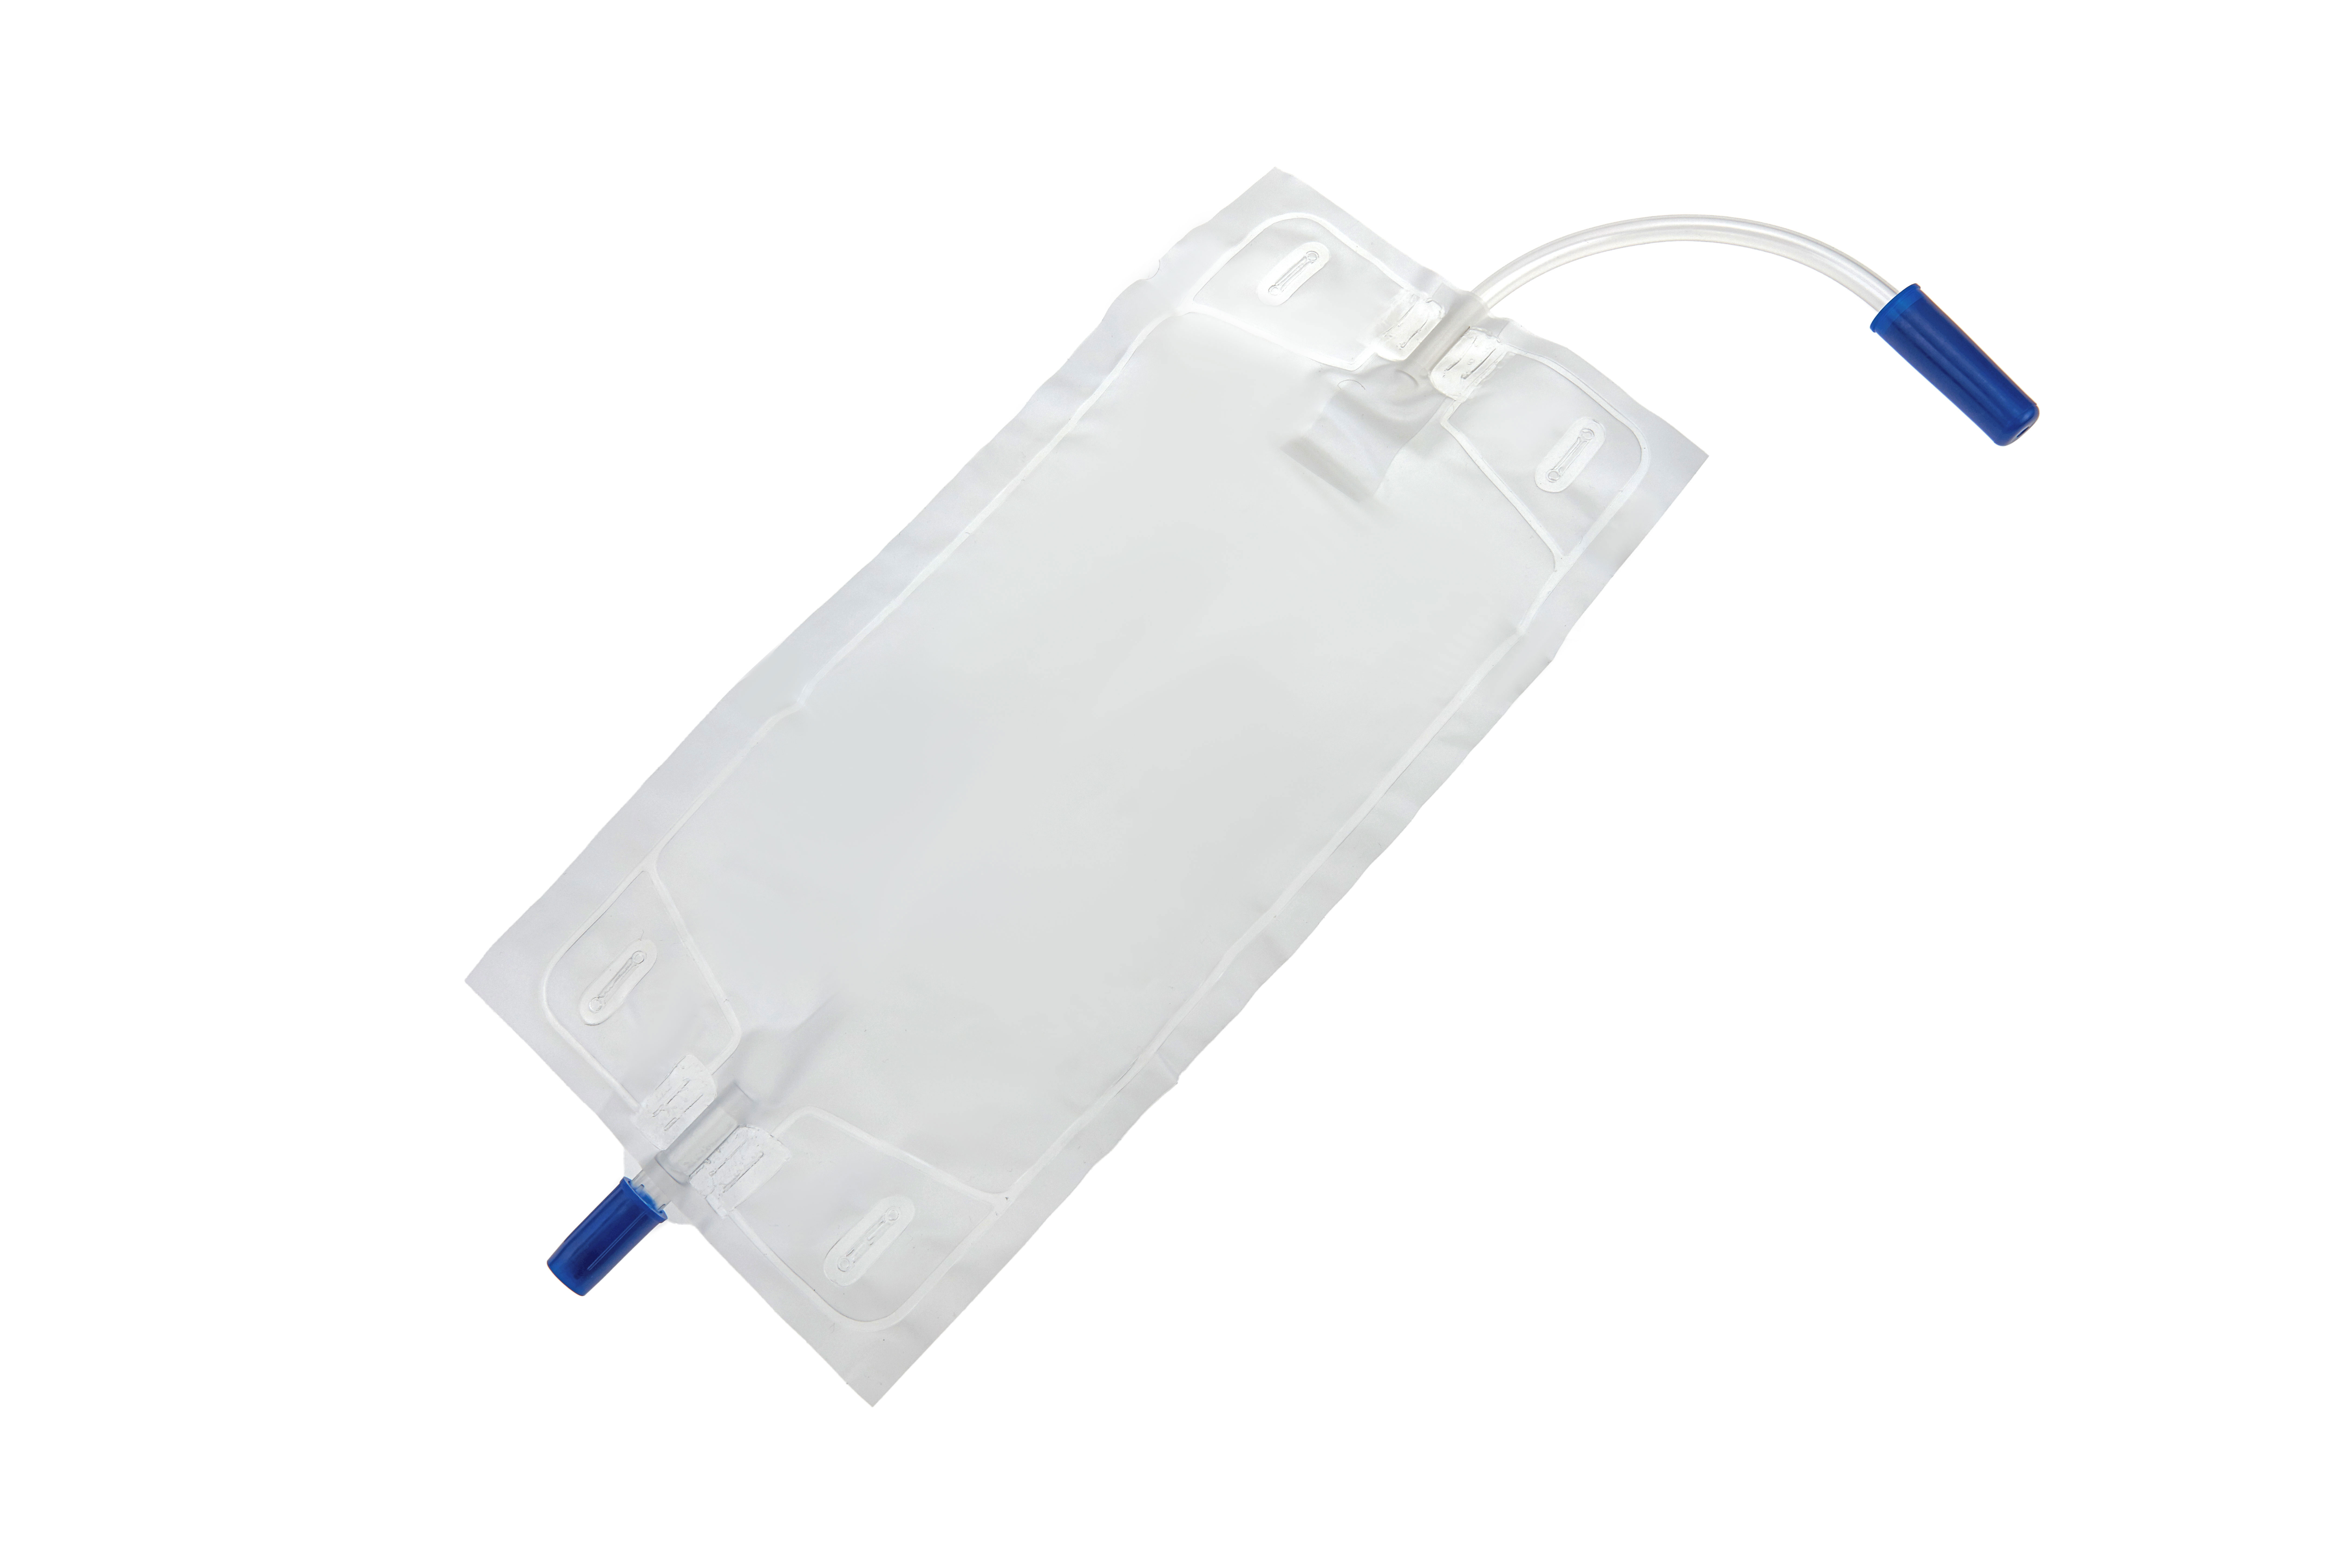 LB750MLNRV Poches à urine Romed avec fixation à la jambe, 750 ml, avec clapet antiretour, tube de 15 cm, stériles, conditionnées individuellement dans un sac plastique, 250 unités par carton.